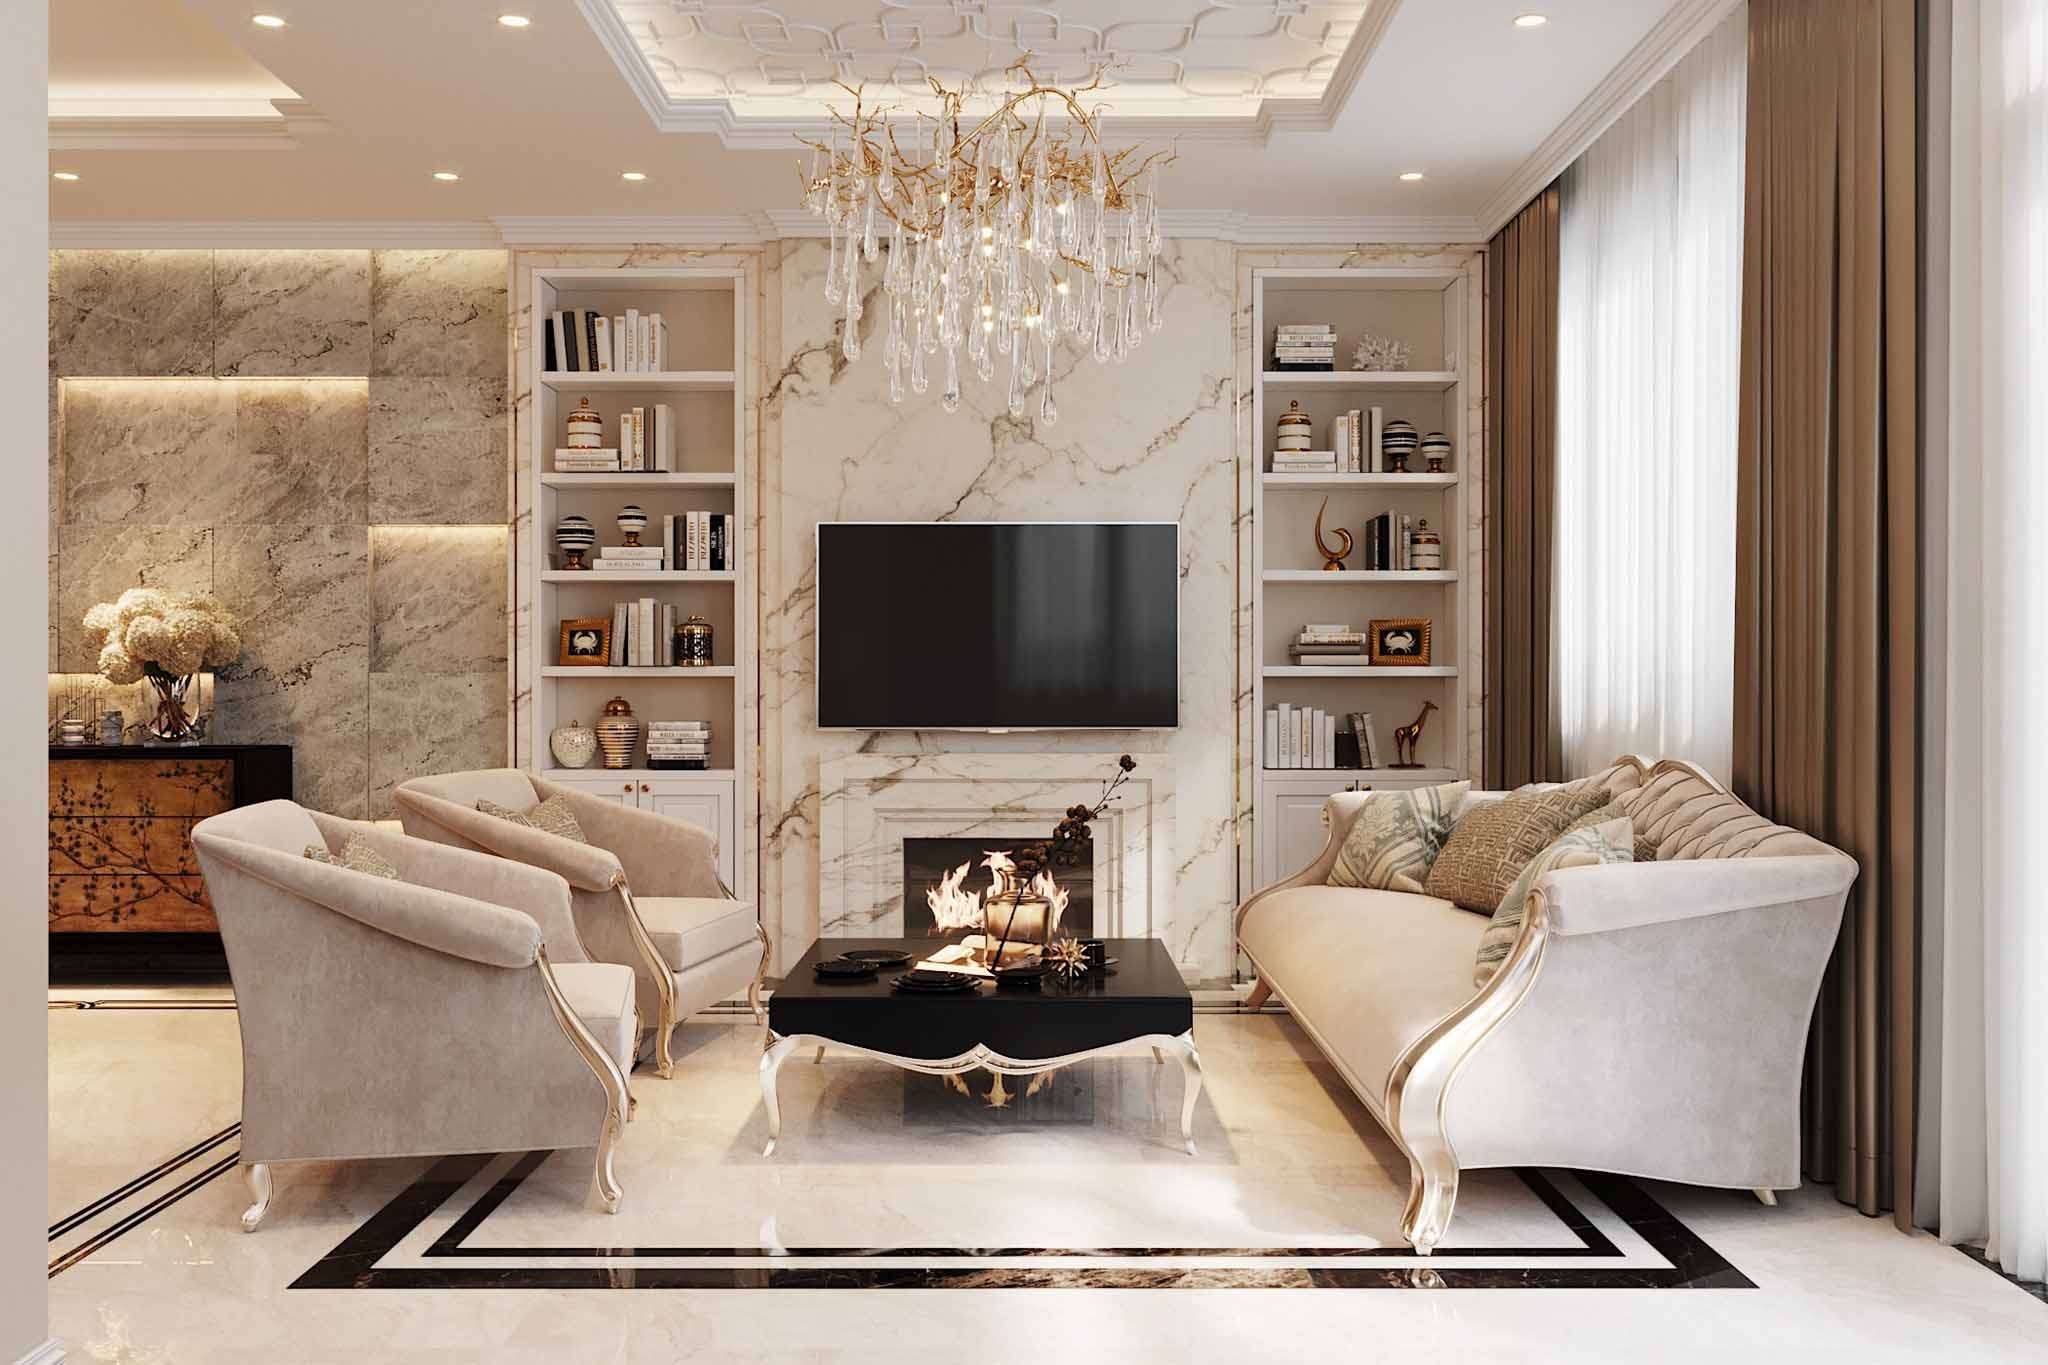 Trang trí phòng khách theo phong cách luxury vô cùng đẳng cấp, sang trọng